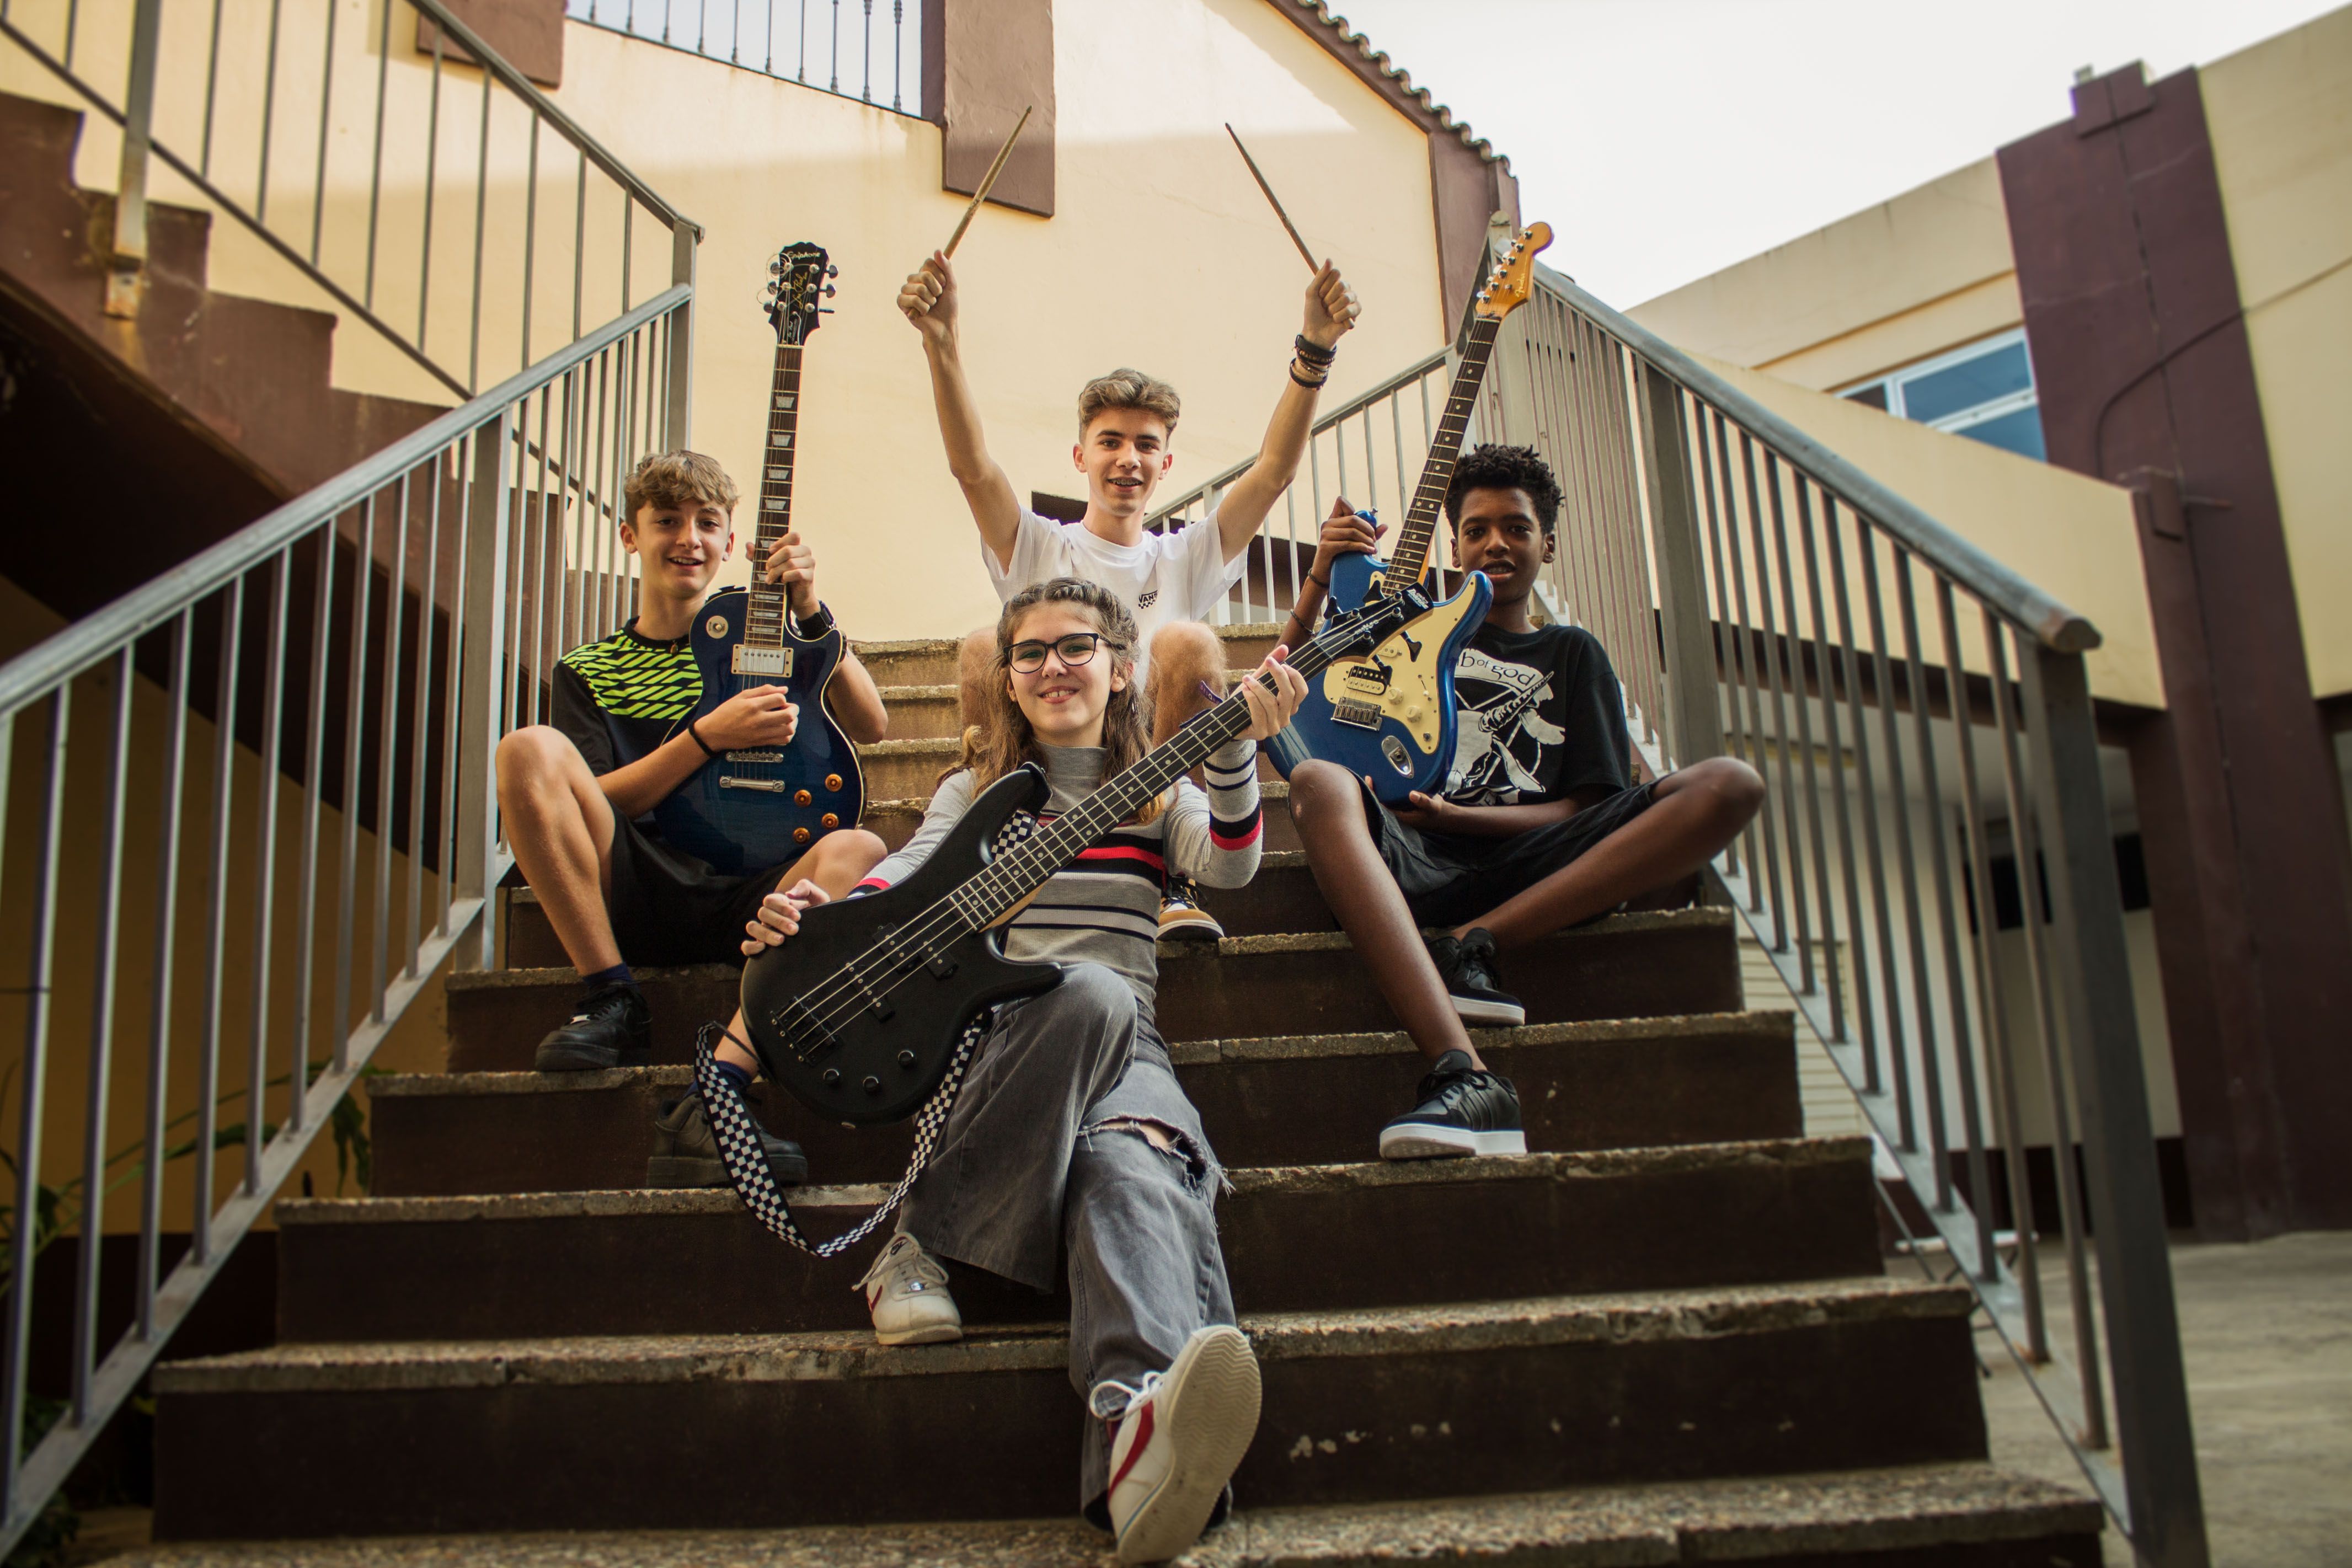 Mar, Asier, Mario y Daniel forman esta banda adolescente que versiona a leyendas del rock en Puerto Real.